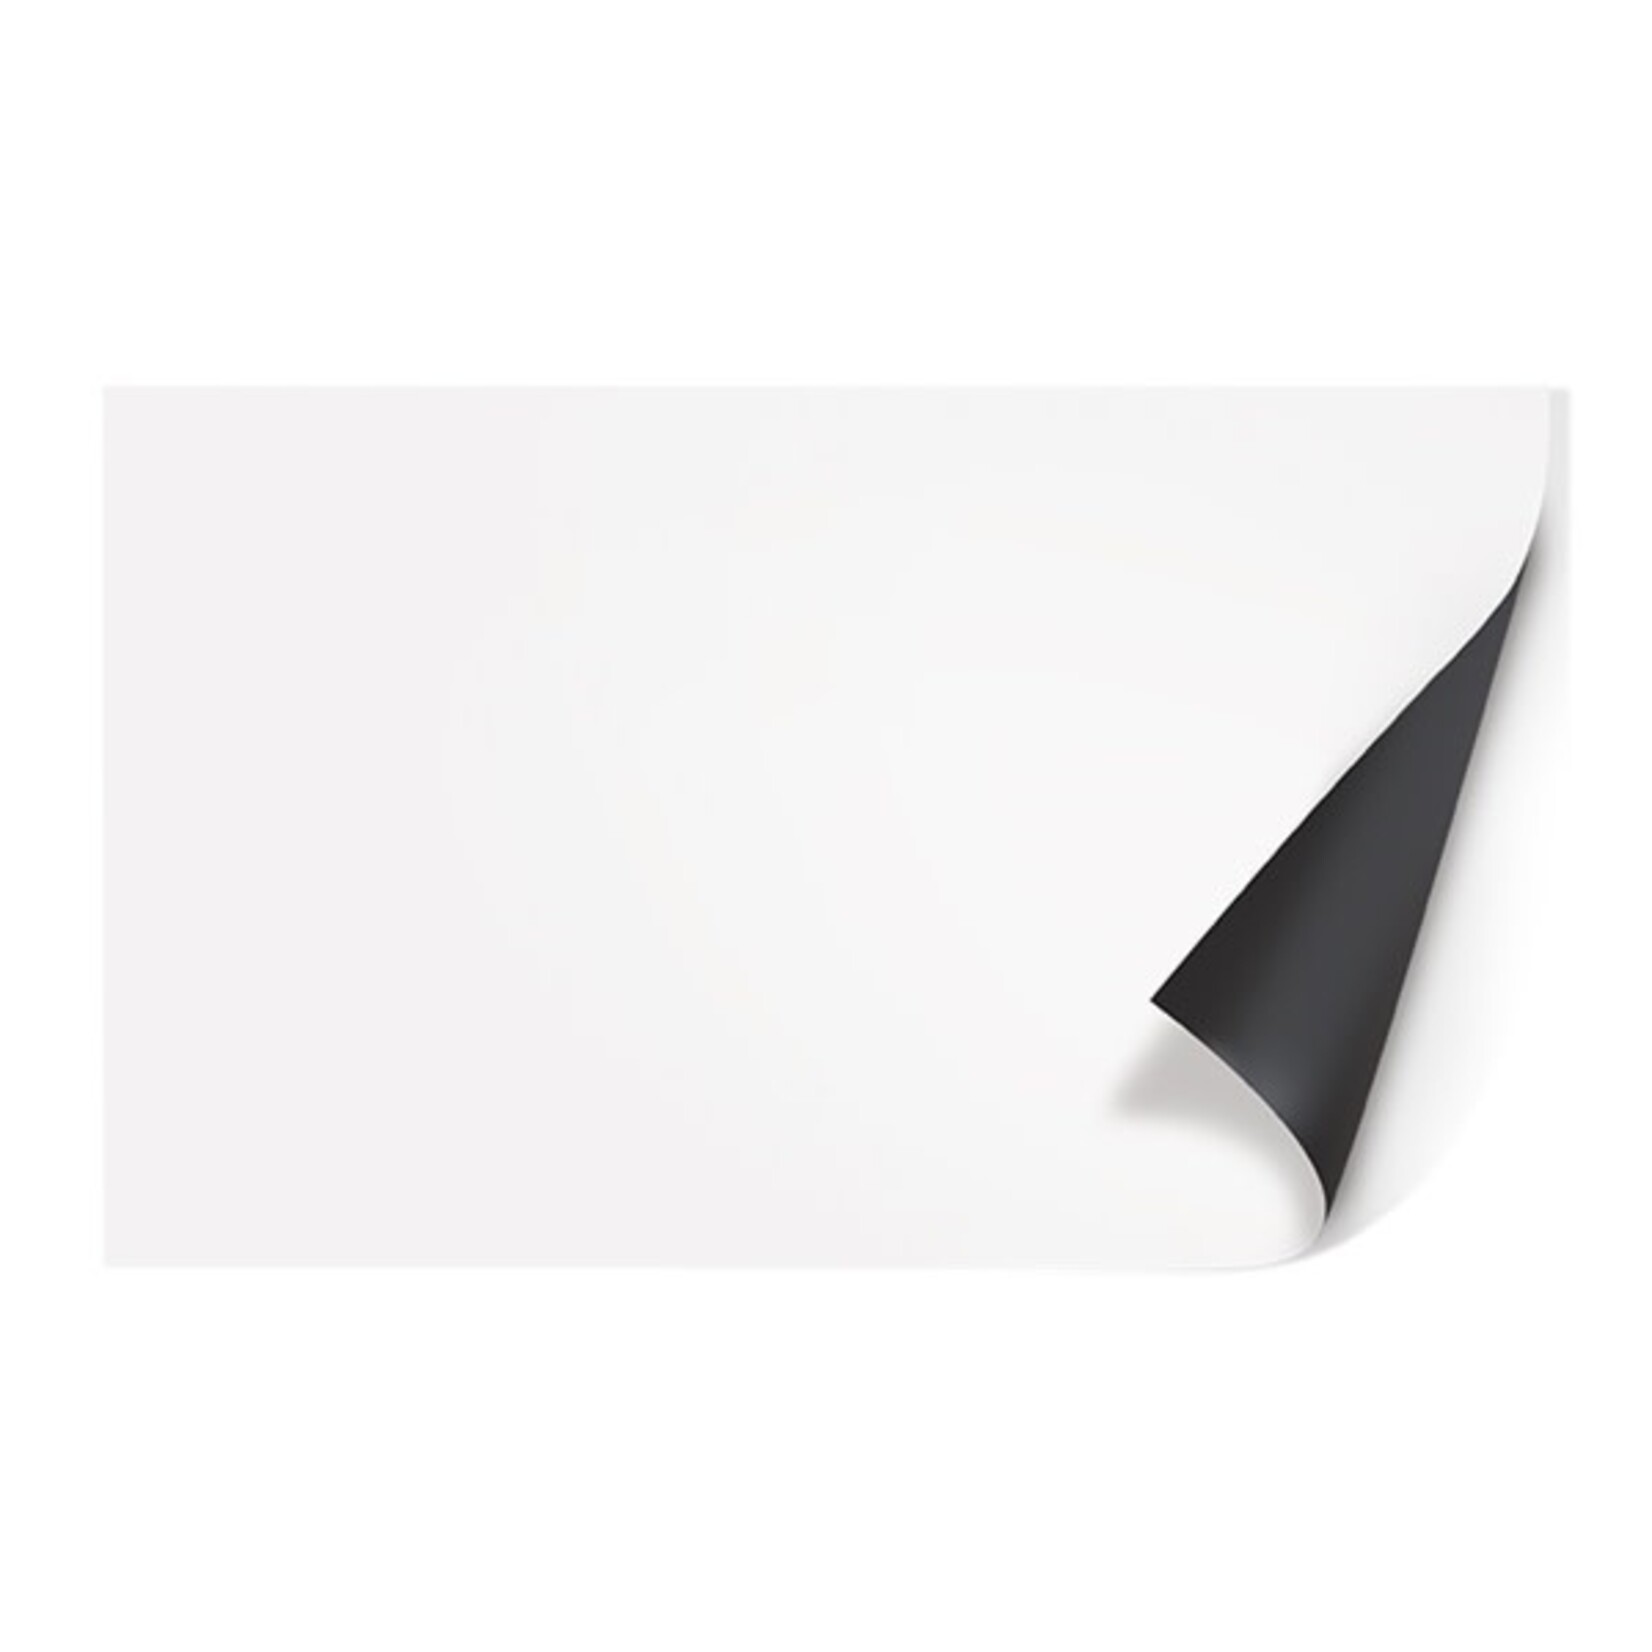 Juwel Poster3 s 60x30 cm tweezijdig bedrukt zwart/wit